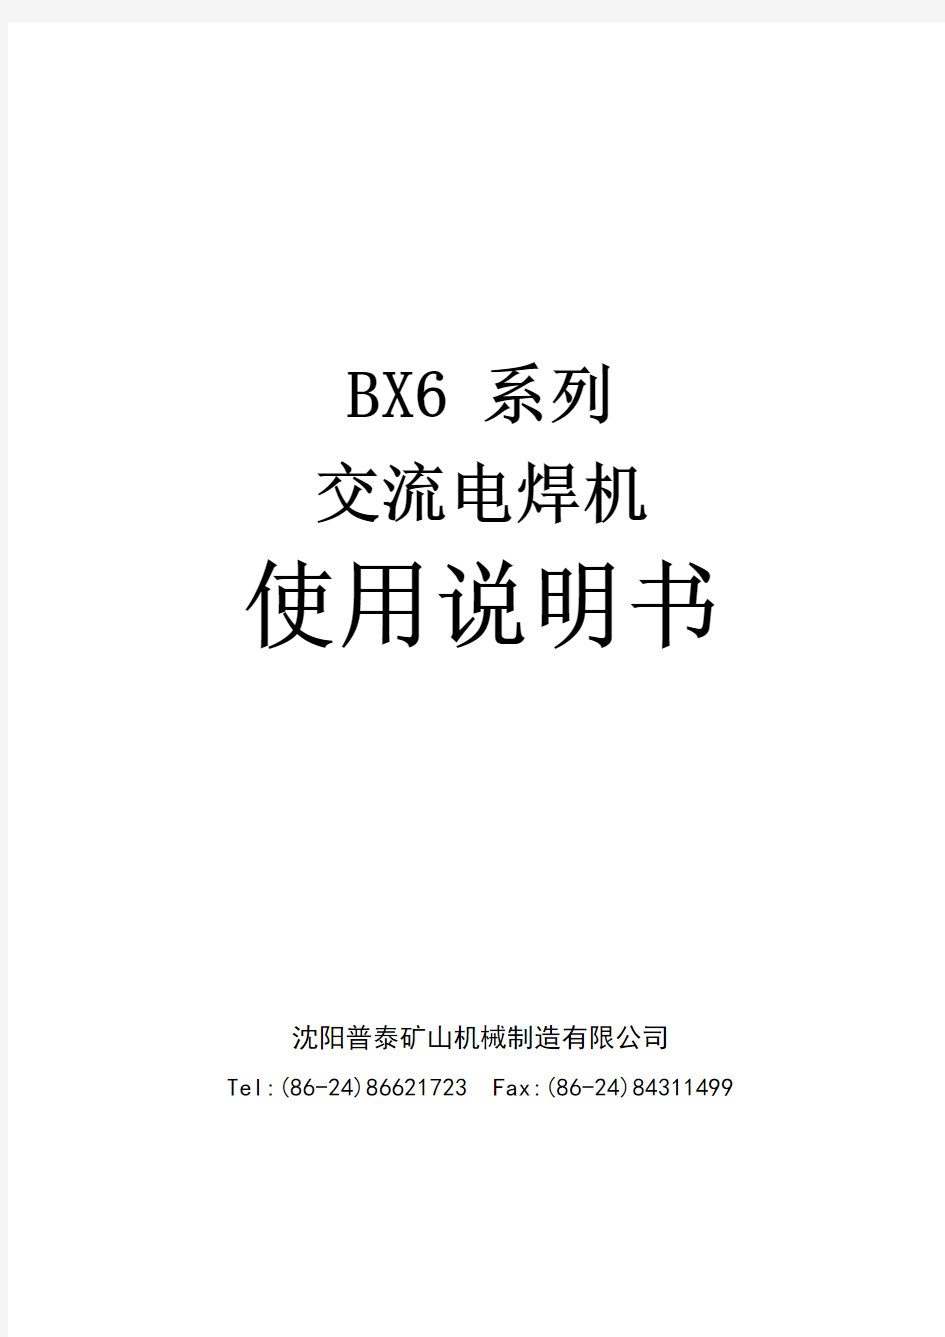 BX6 系列交流电焊机使用说明书